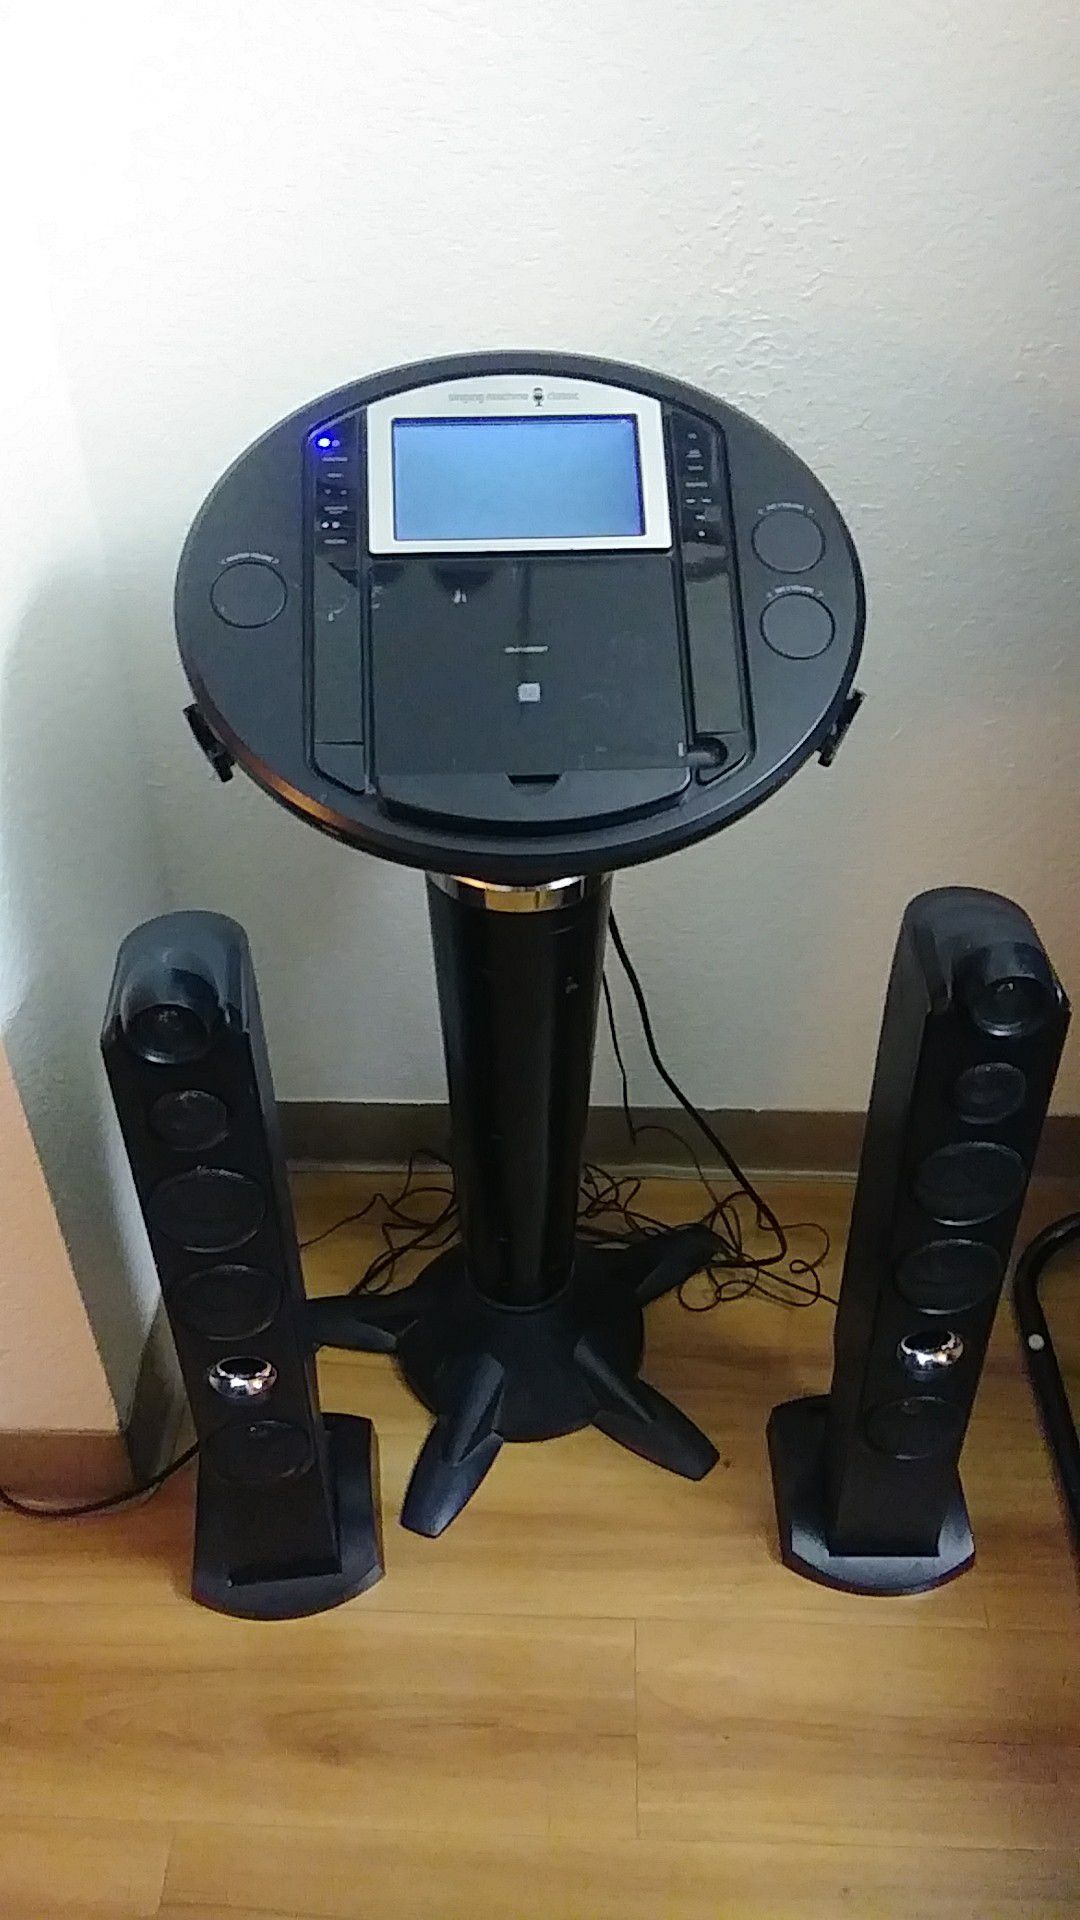 The Singing Machine Classic free standing karaoke Machine